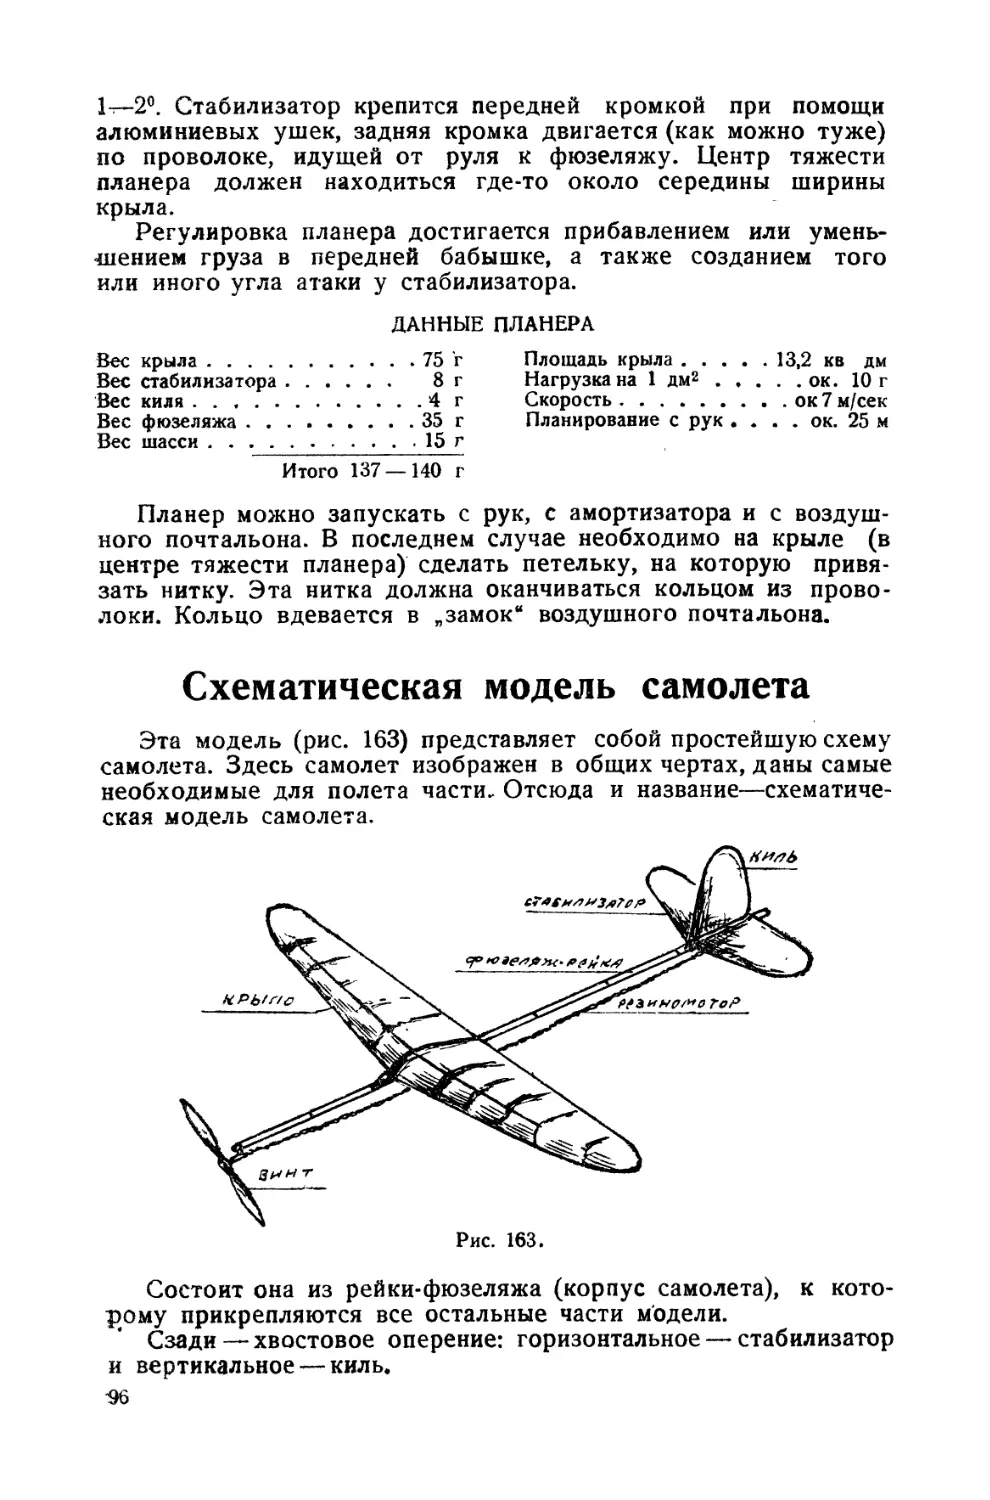 Схематическая модель самолета